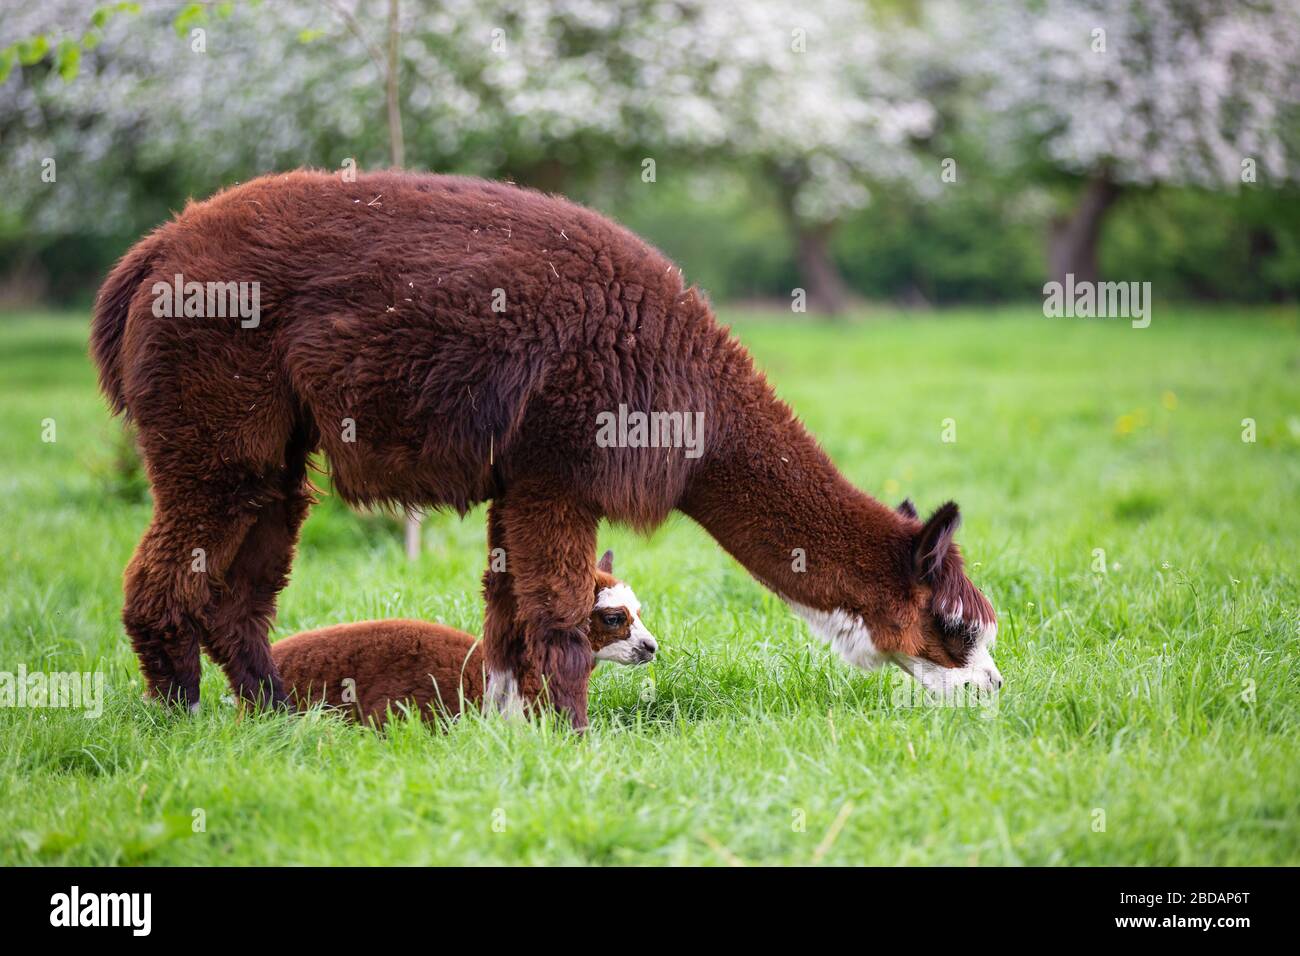 Giovane Alpaca con madre in un prato, mammifero sudamericano Foto Stock